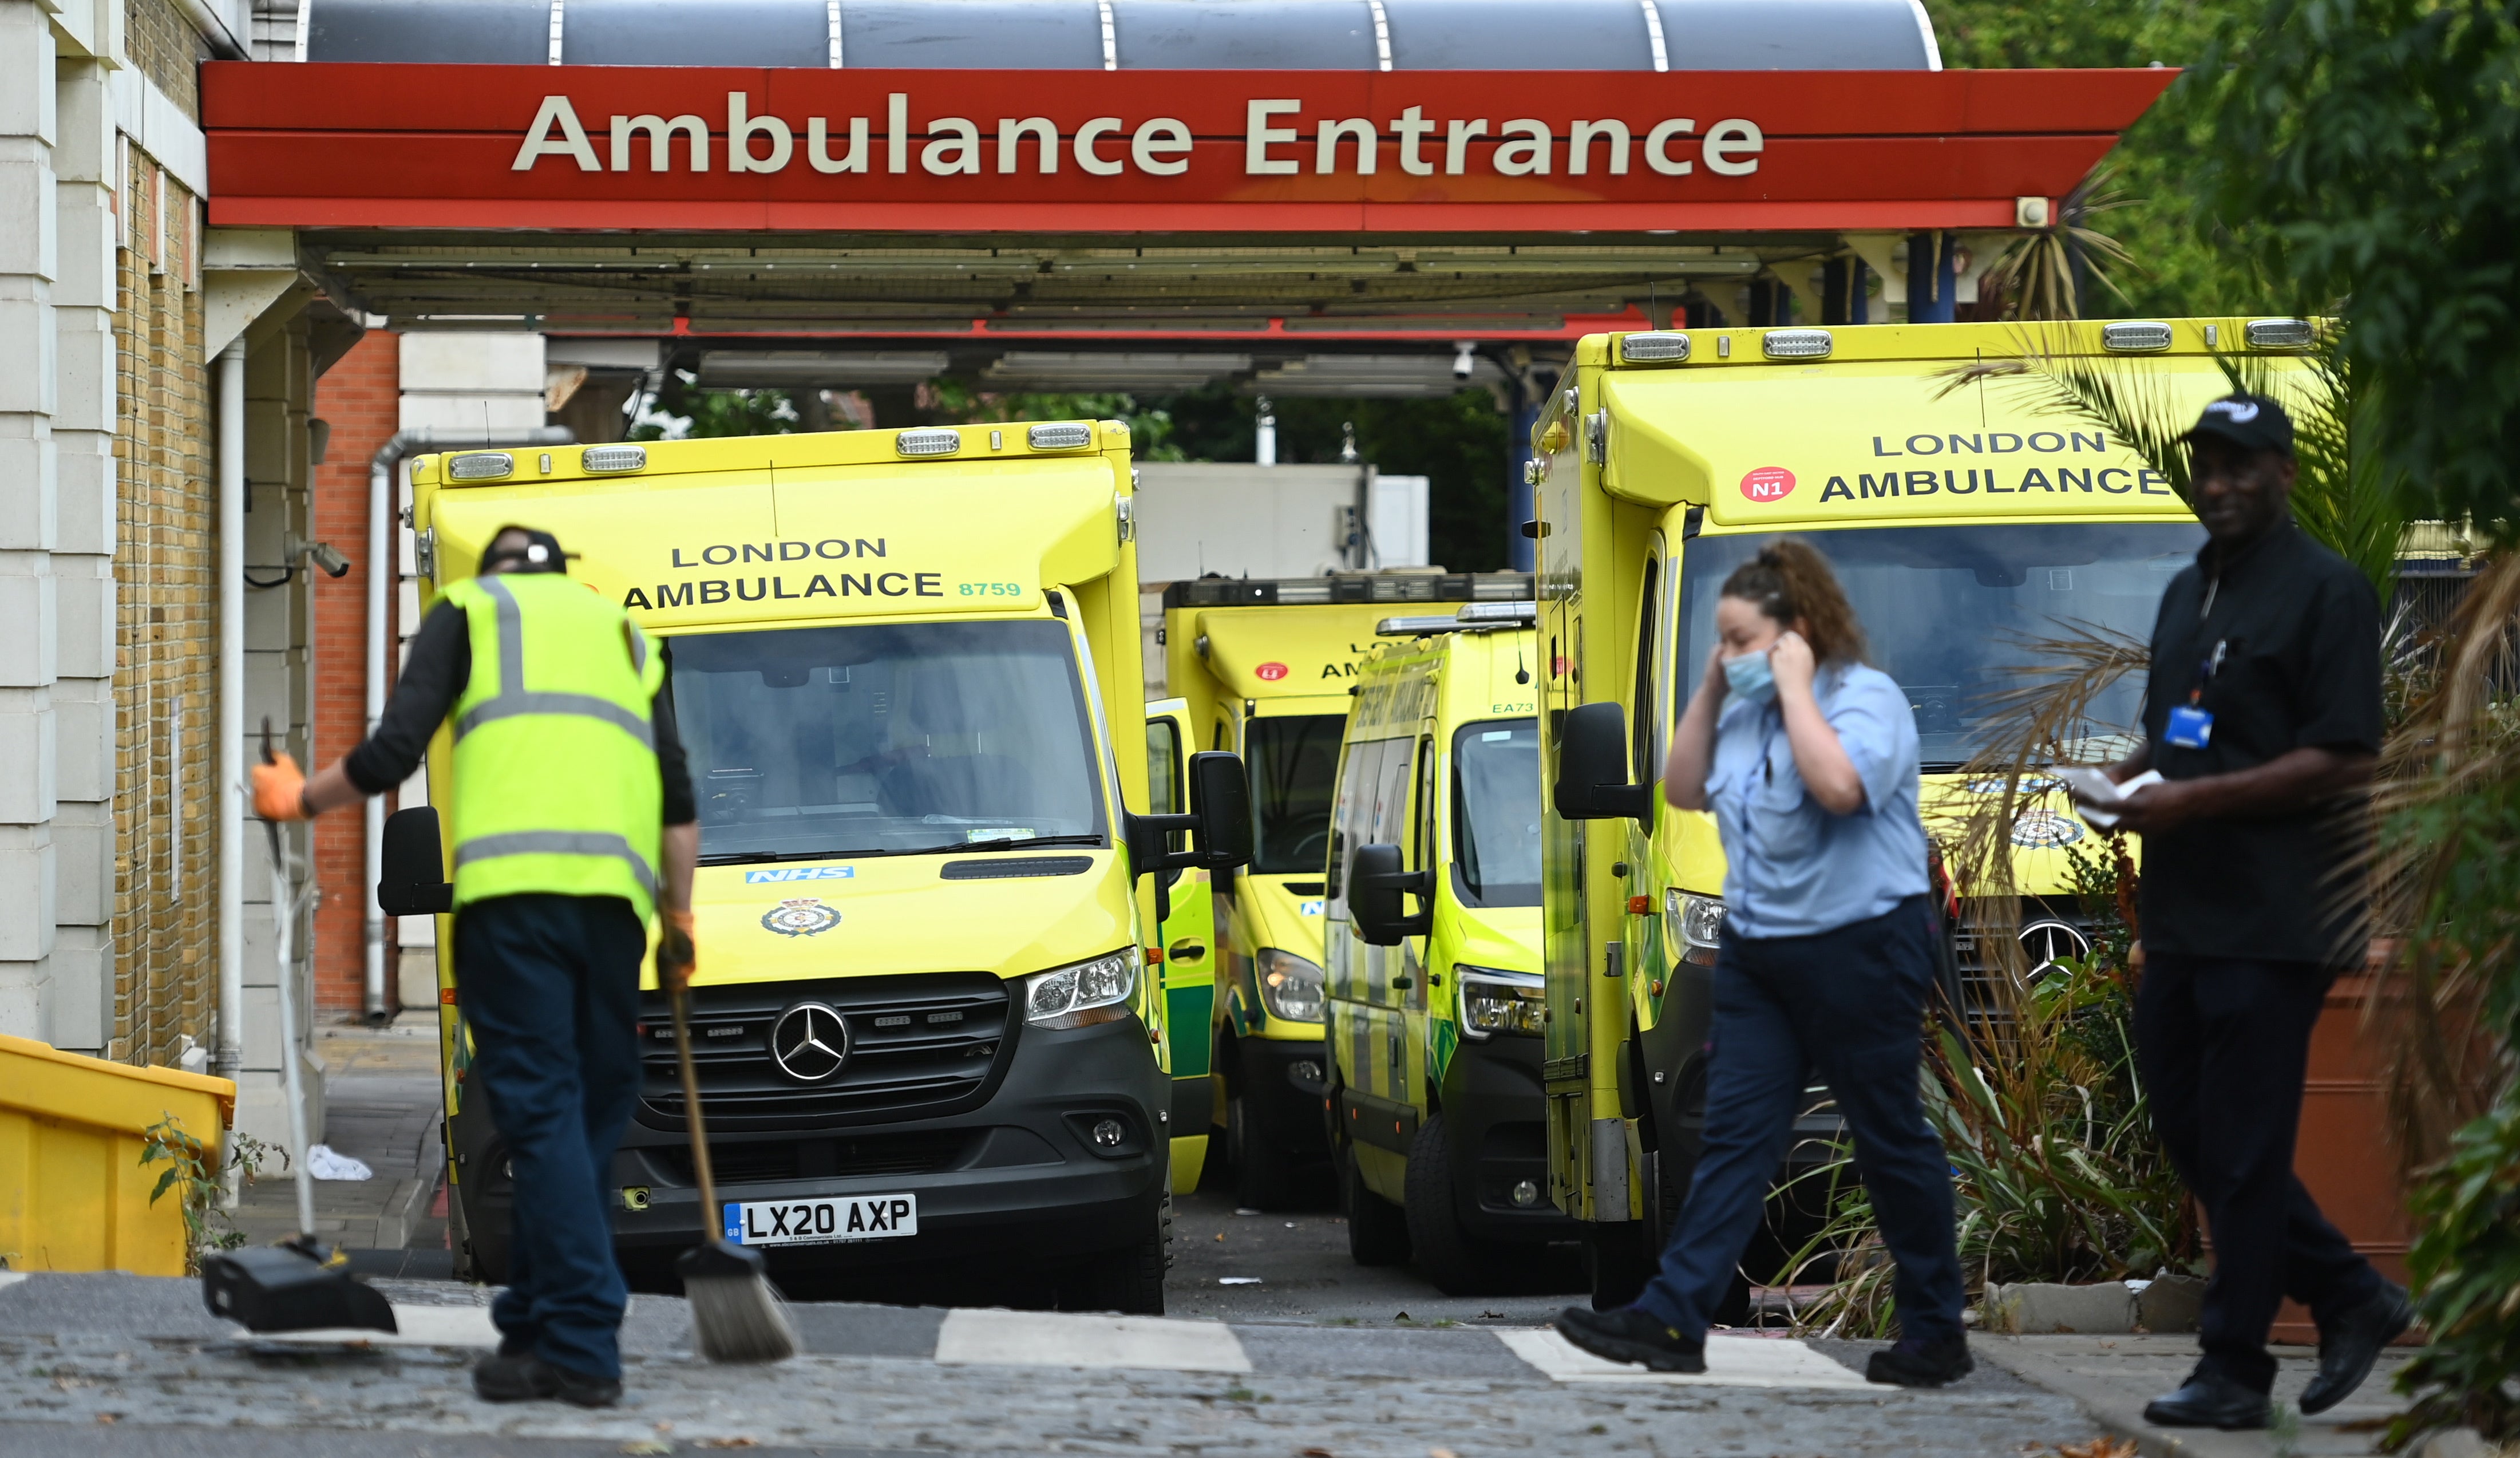 Ambulances outside a London A&E department